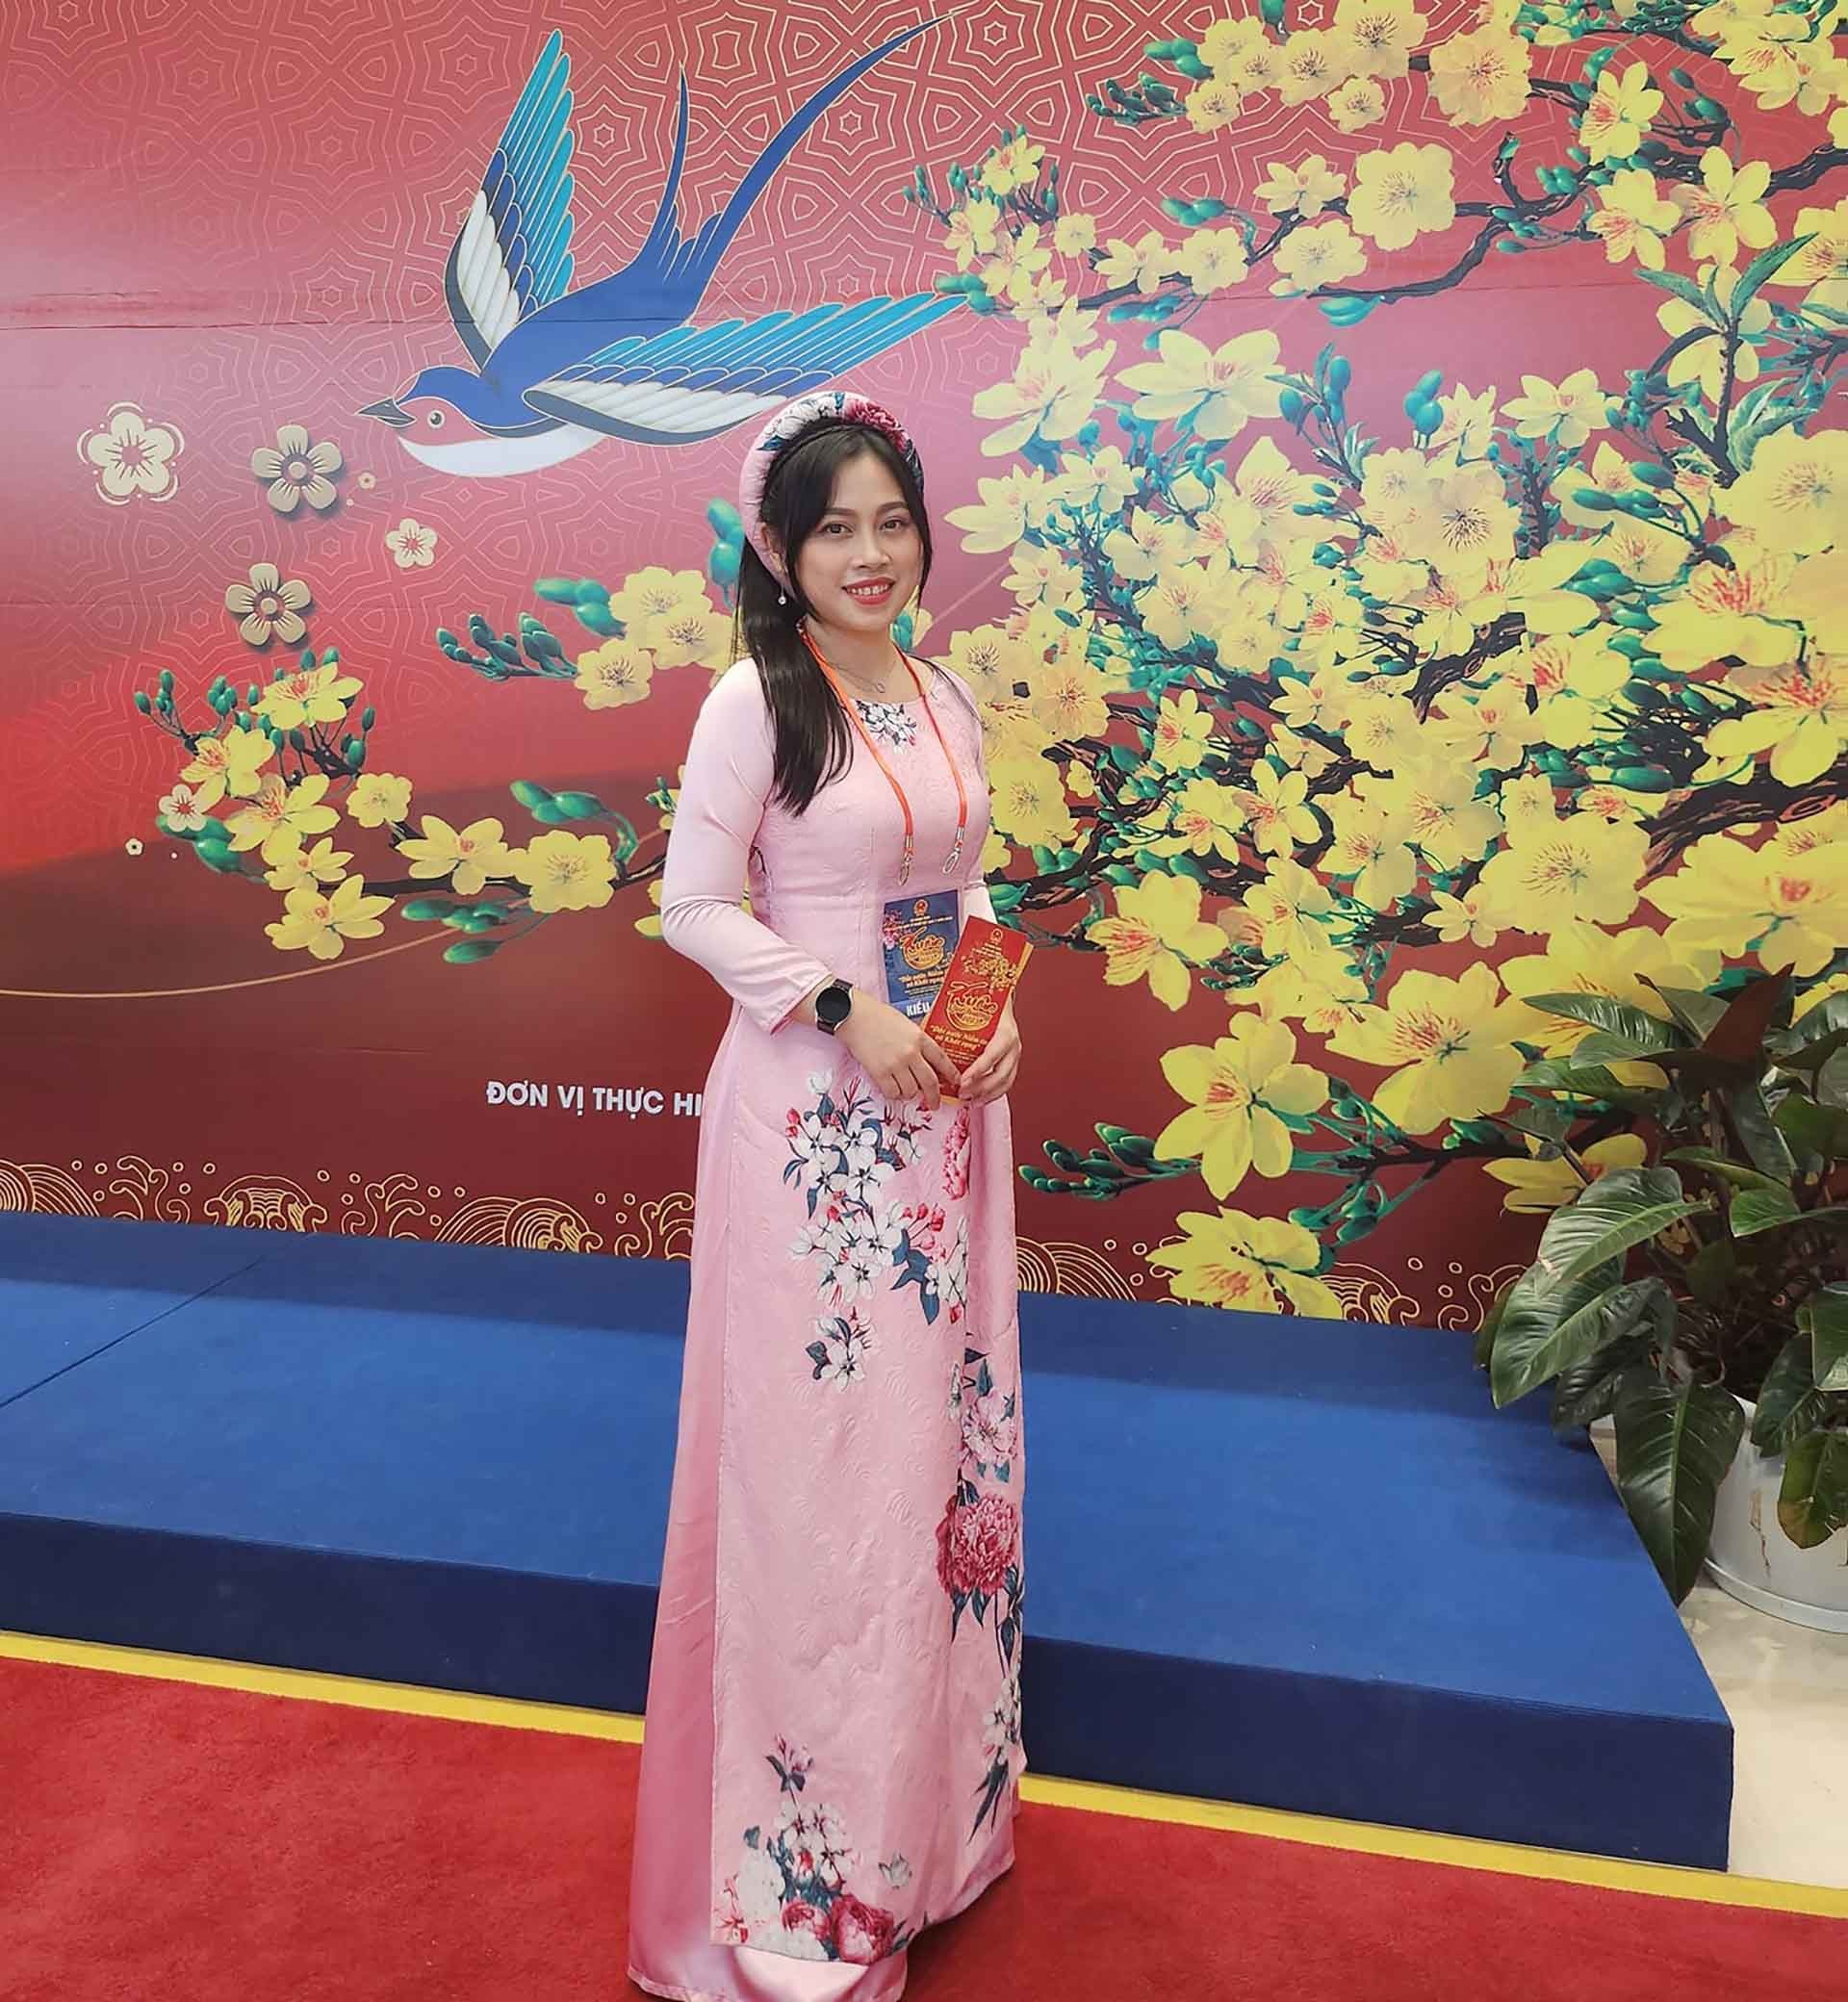 Chị Lê Nguyễn Minh Phương đón Tết ở quê hương. (Ảnh: NVCC)